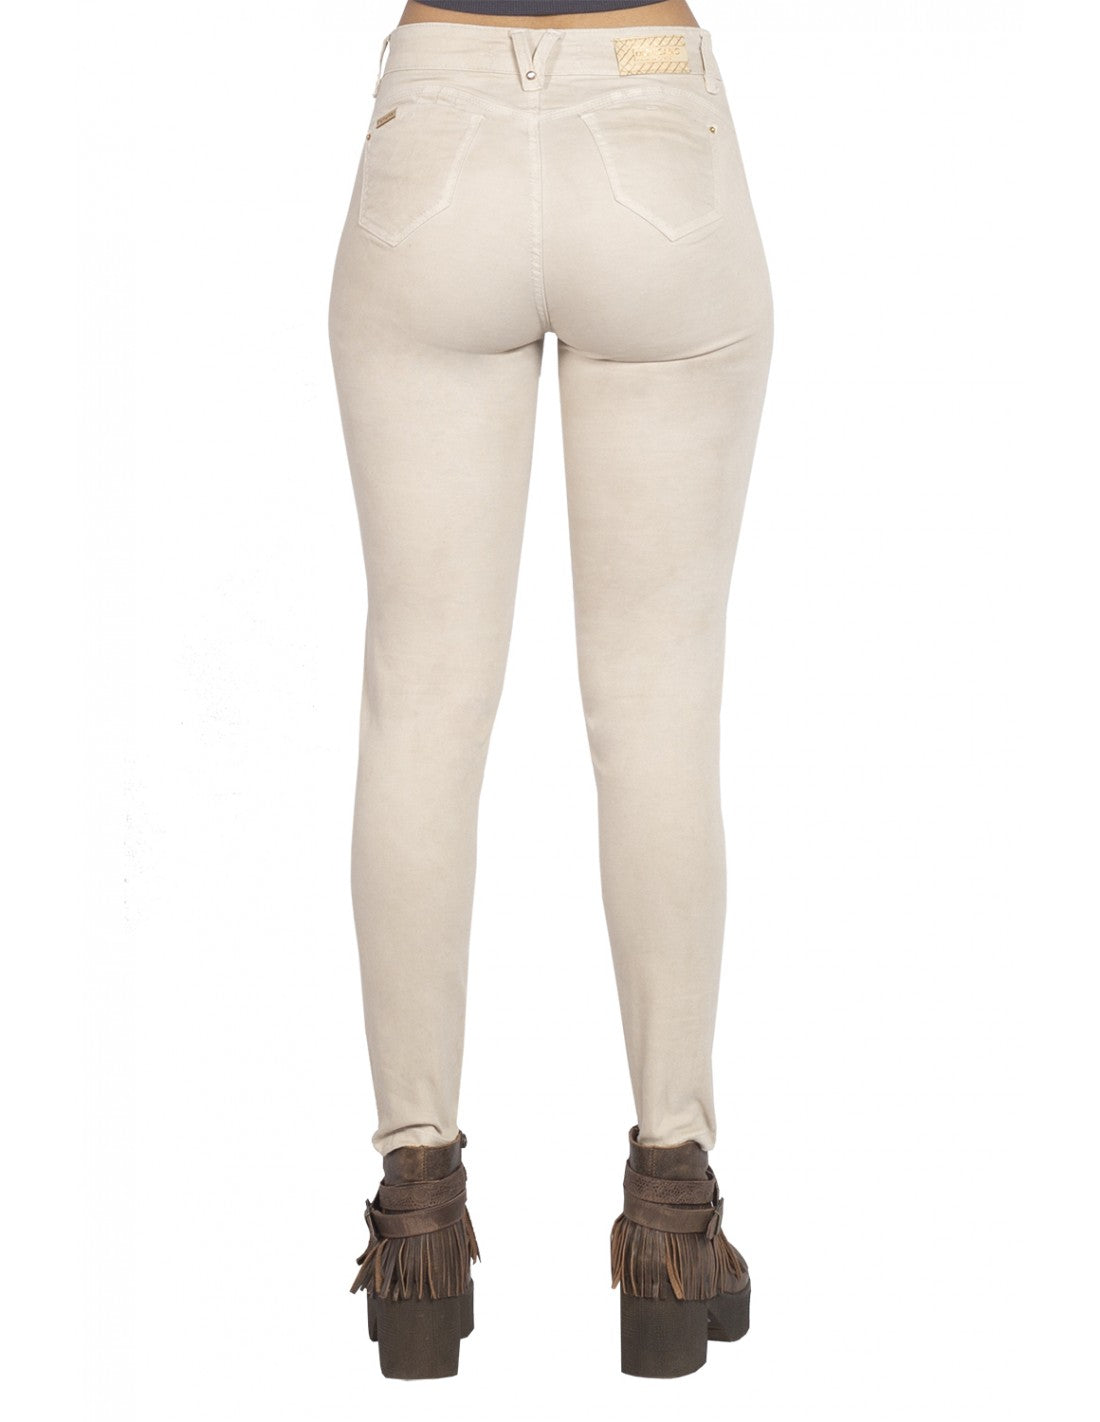 Jeans Mujer Skinny 3133 Camel